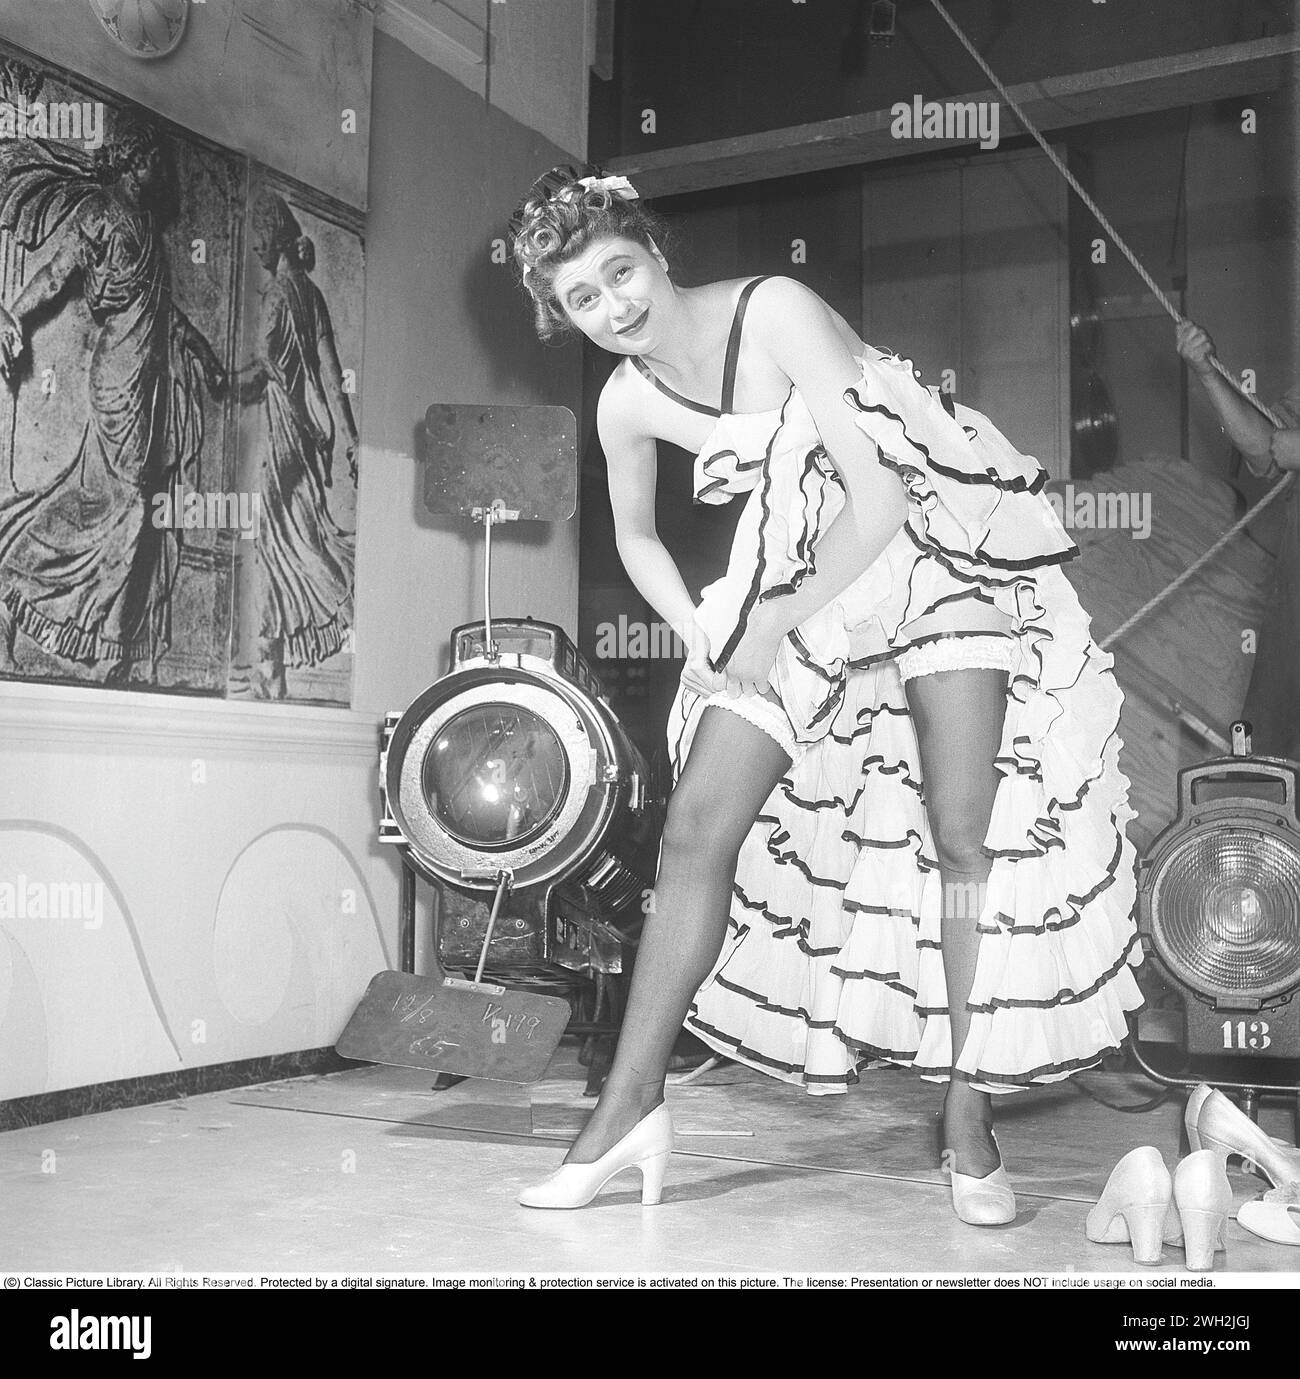 Hinter den Kulissen des Theaters in den 1950er Jahren Eine junge Frau aus einem Theaterensemble steht in ihrer Bühnenkleidung und hat ihren Rock hochgehoben, damit ihre Beine vollständig sichtbar sind. Die hohen Nylonstrümpfe werden an Strumpfhaltern befestigt. 1950. Kristoffersson Ref. AY64-10 Stockfoto